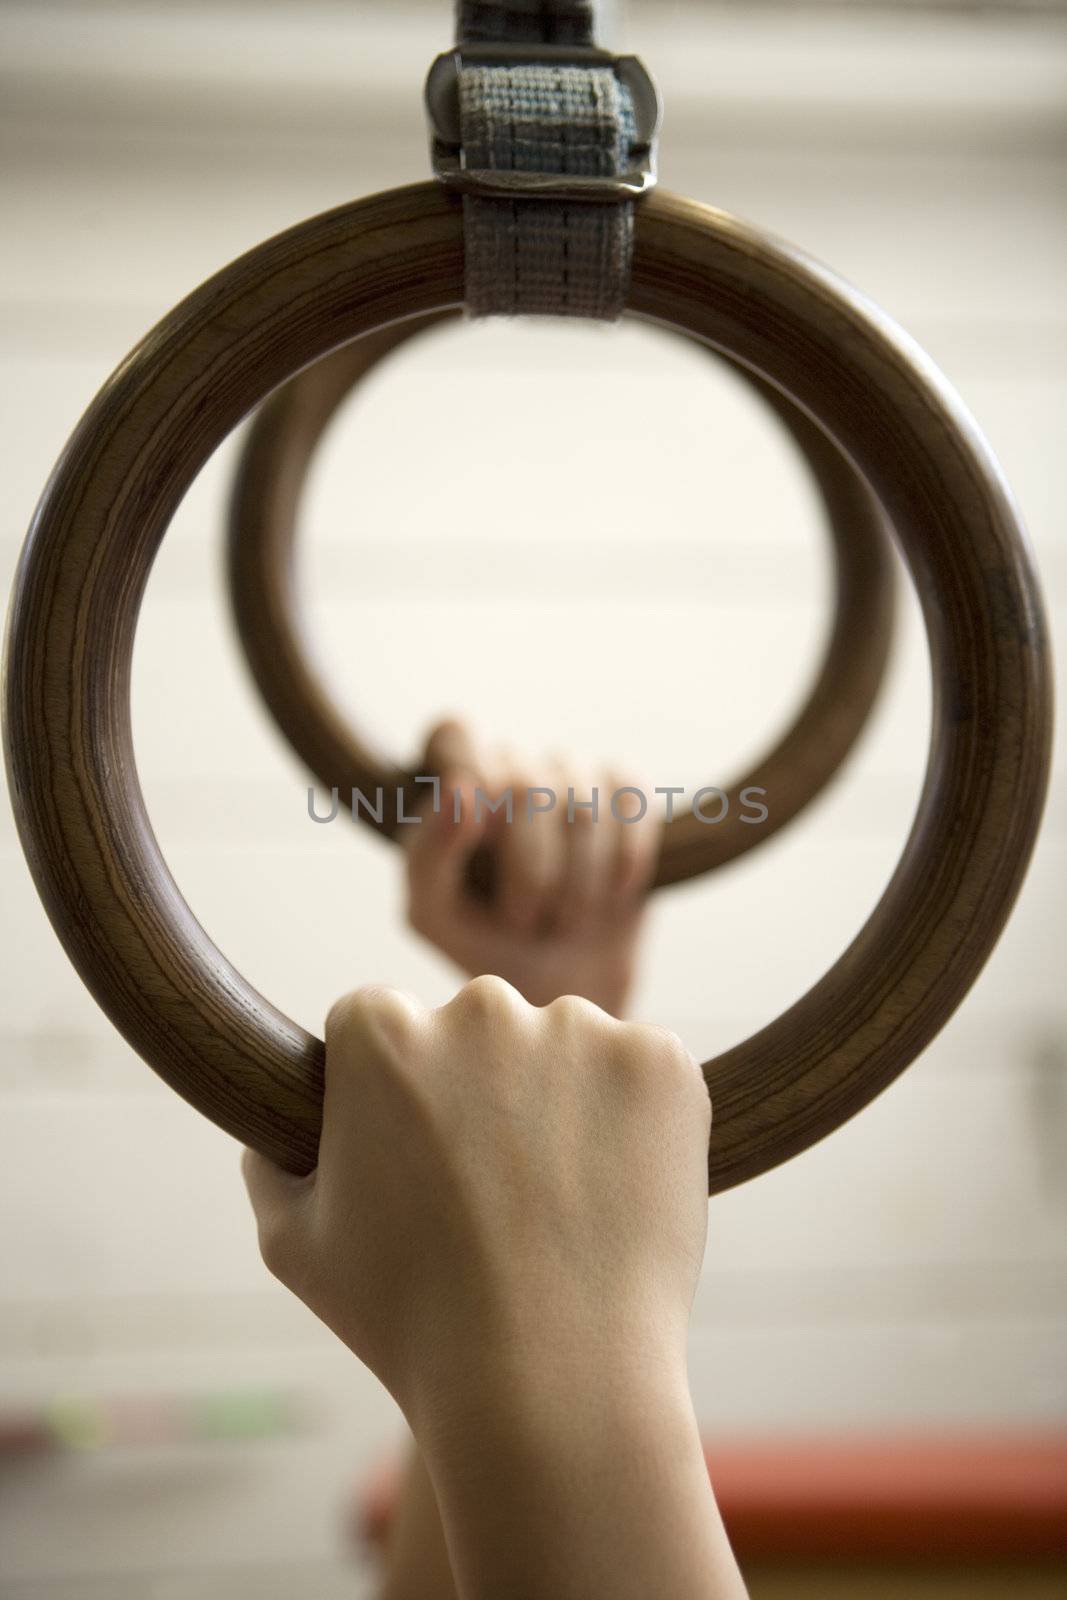 Gymnastic Rings by gemenacom